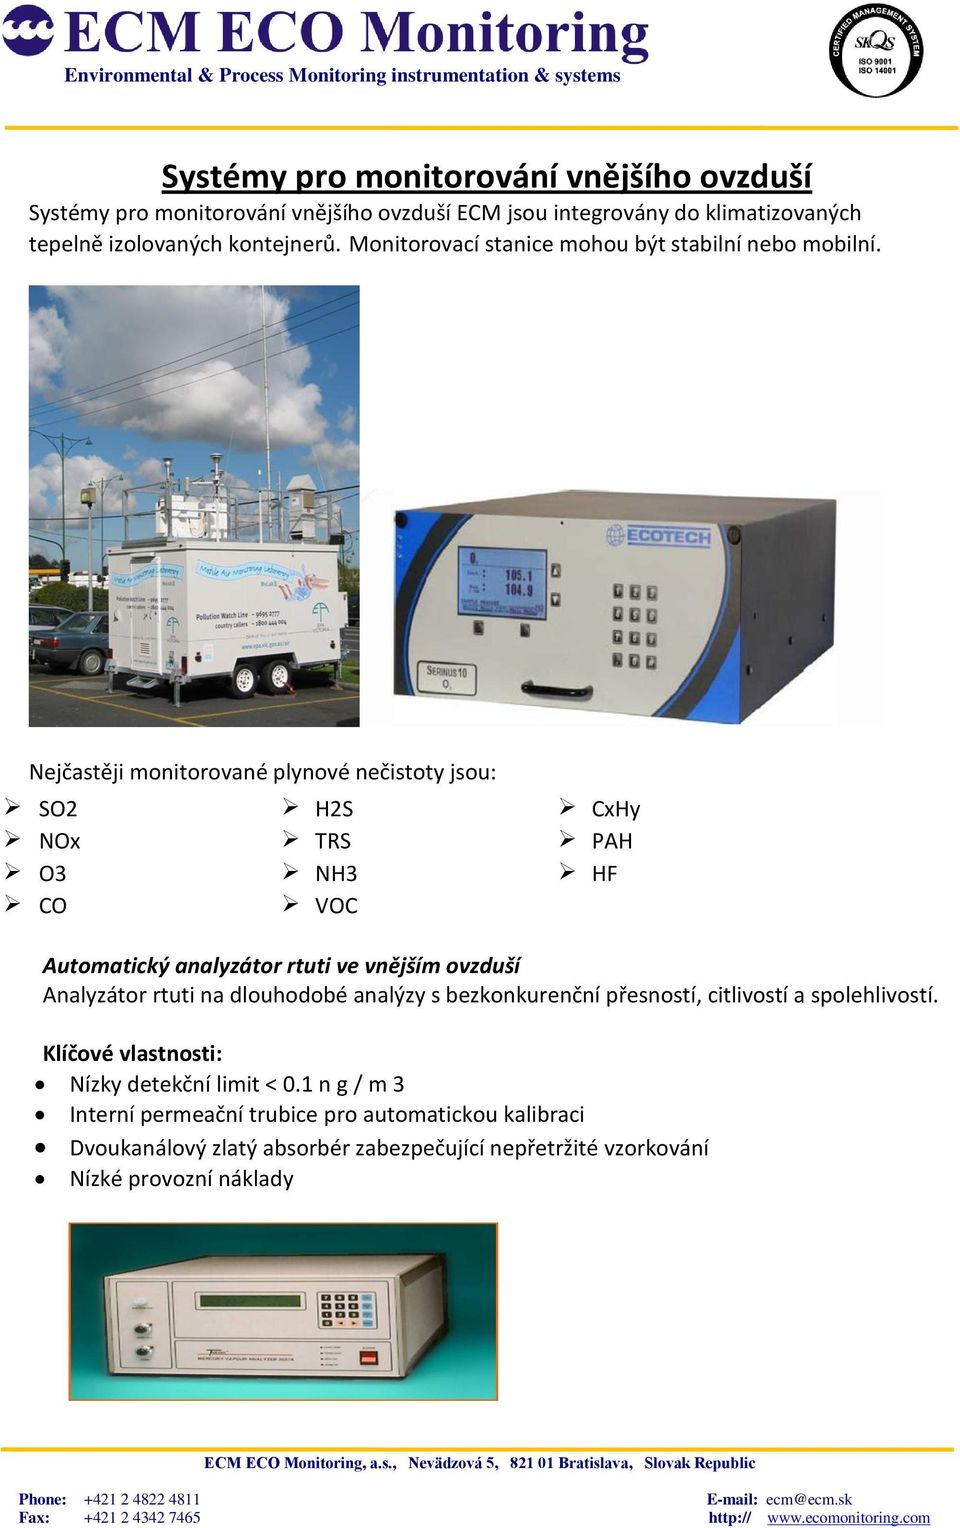 Nejčastěji monitorované plynové nečistoty jsou: SO2 H2S CxHy NOx TRS PAH O3 NH3 HF CO VOC Automatický analyzátor rtuti ve vnějším ovzduší Analyzátor rtuti na